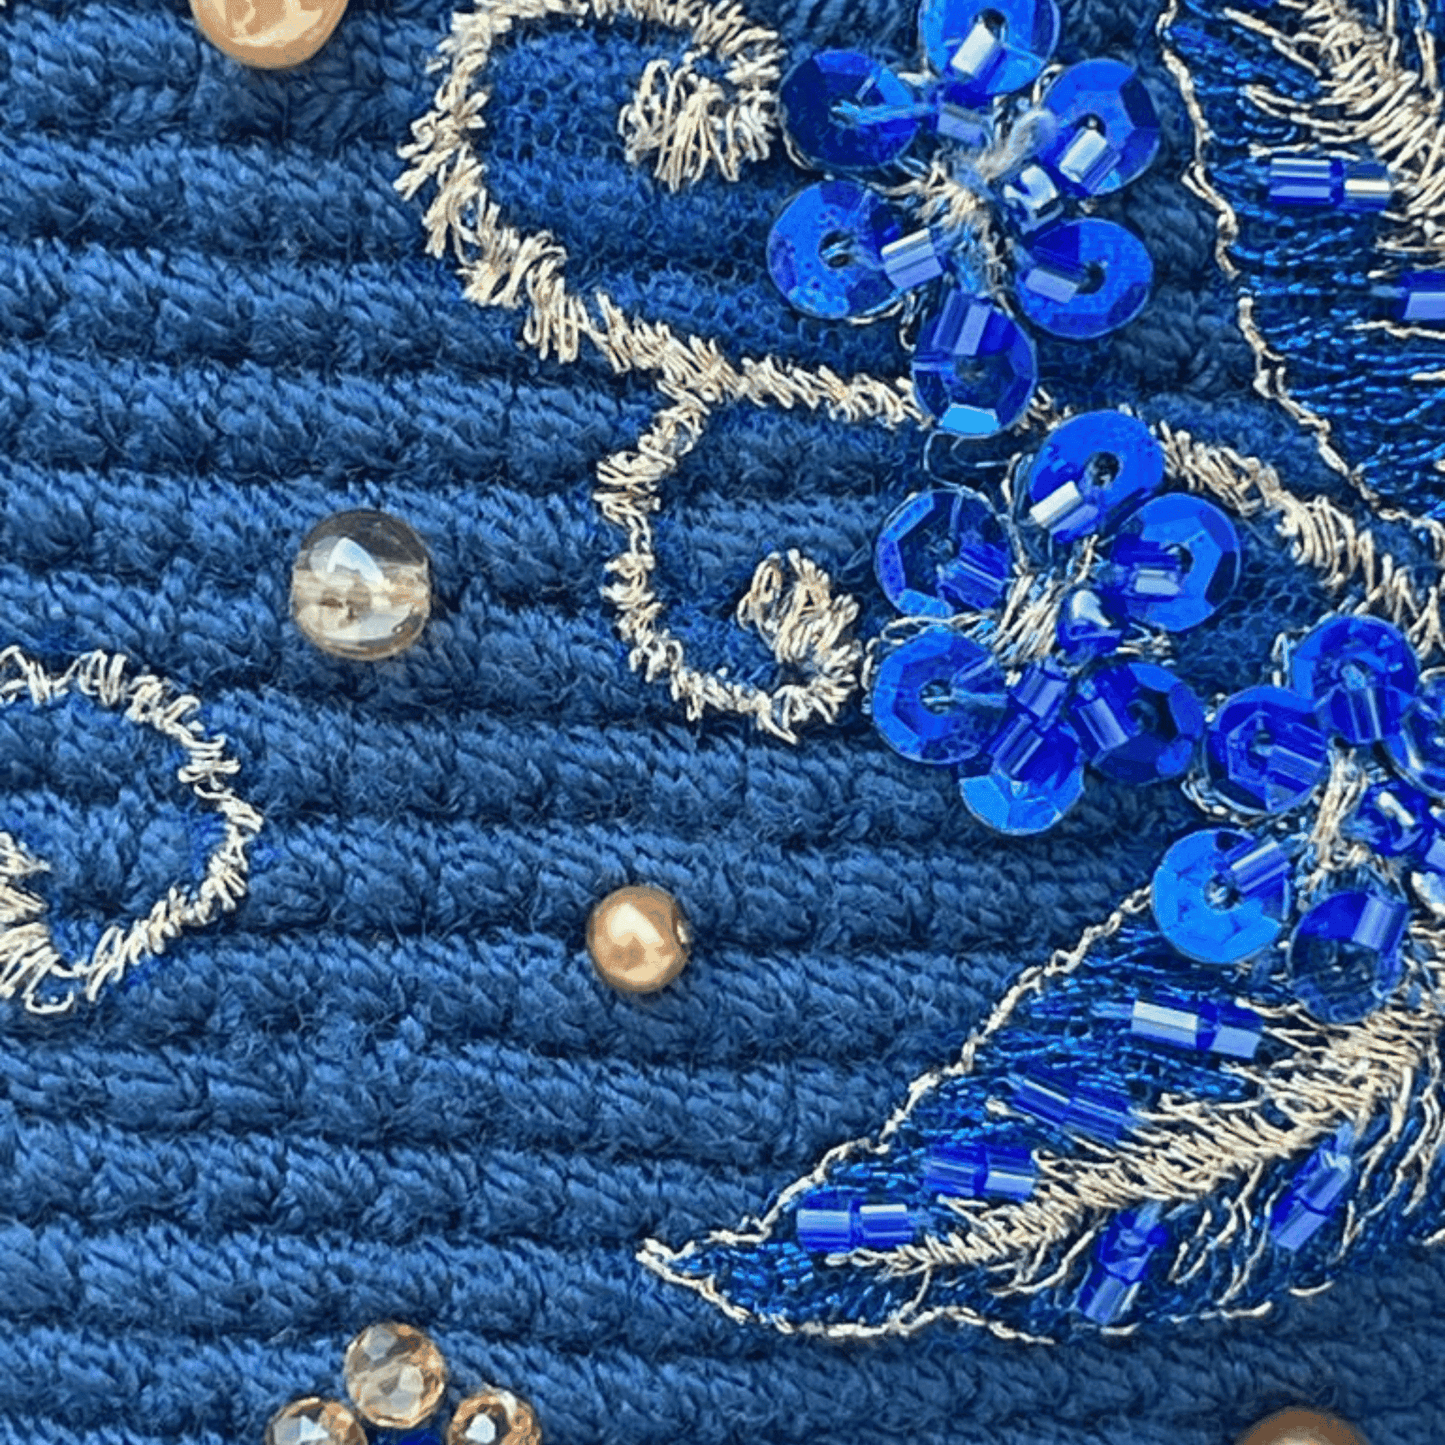 Detalle del tejido y recamado de mochila wayuu azul